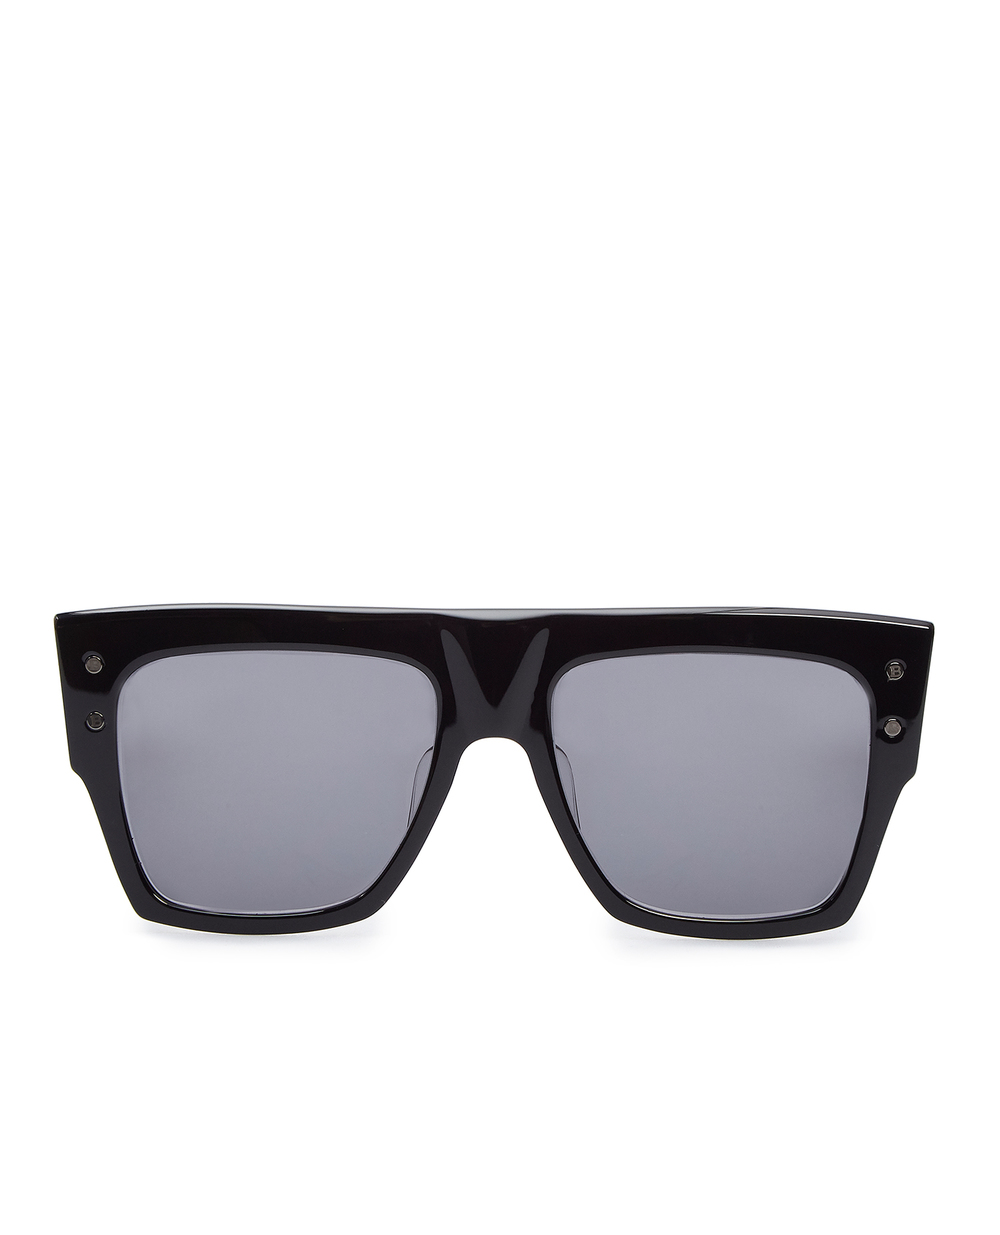 Солнцезащитные очки  Balmain BPS-100C-56, черный цвет • Купить в интернет-магазине Kameron